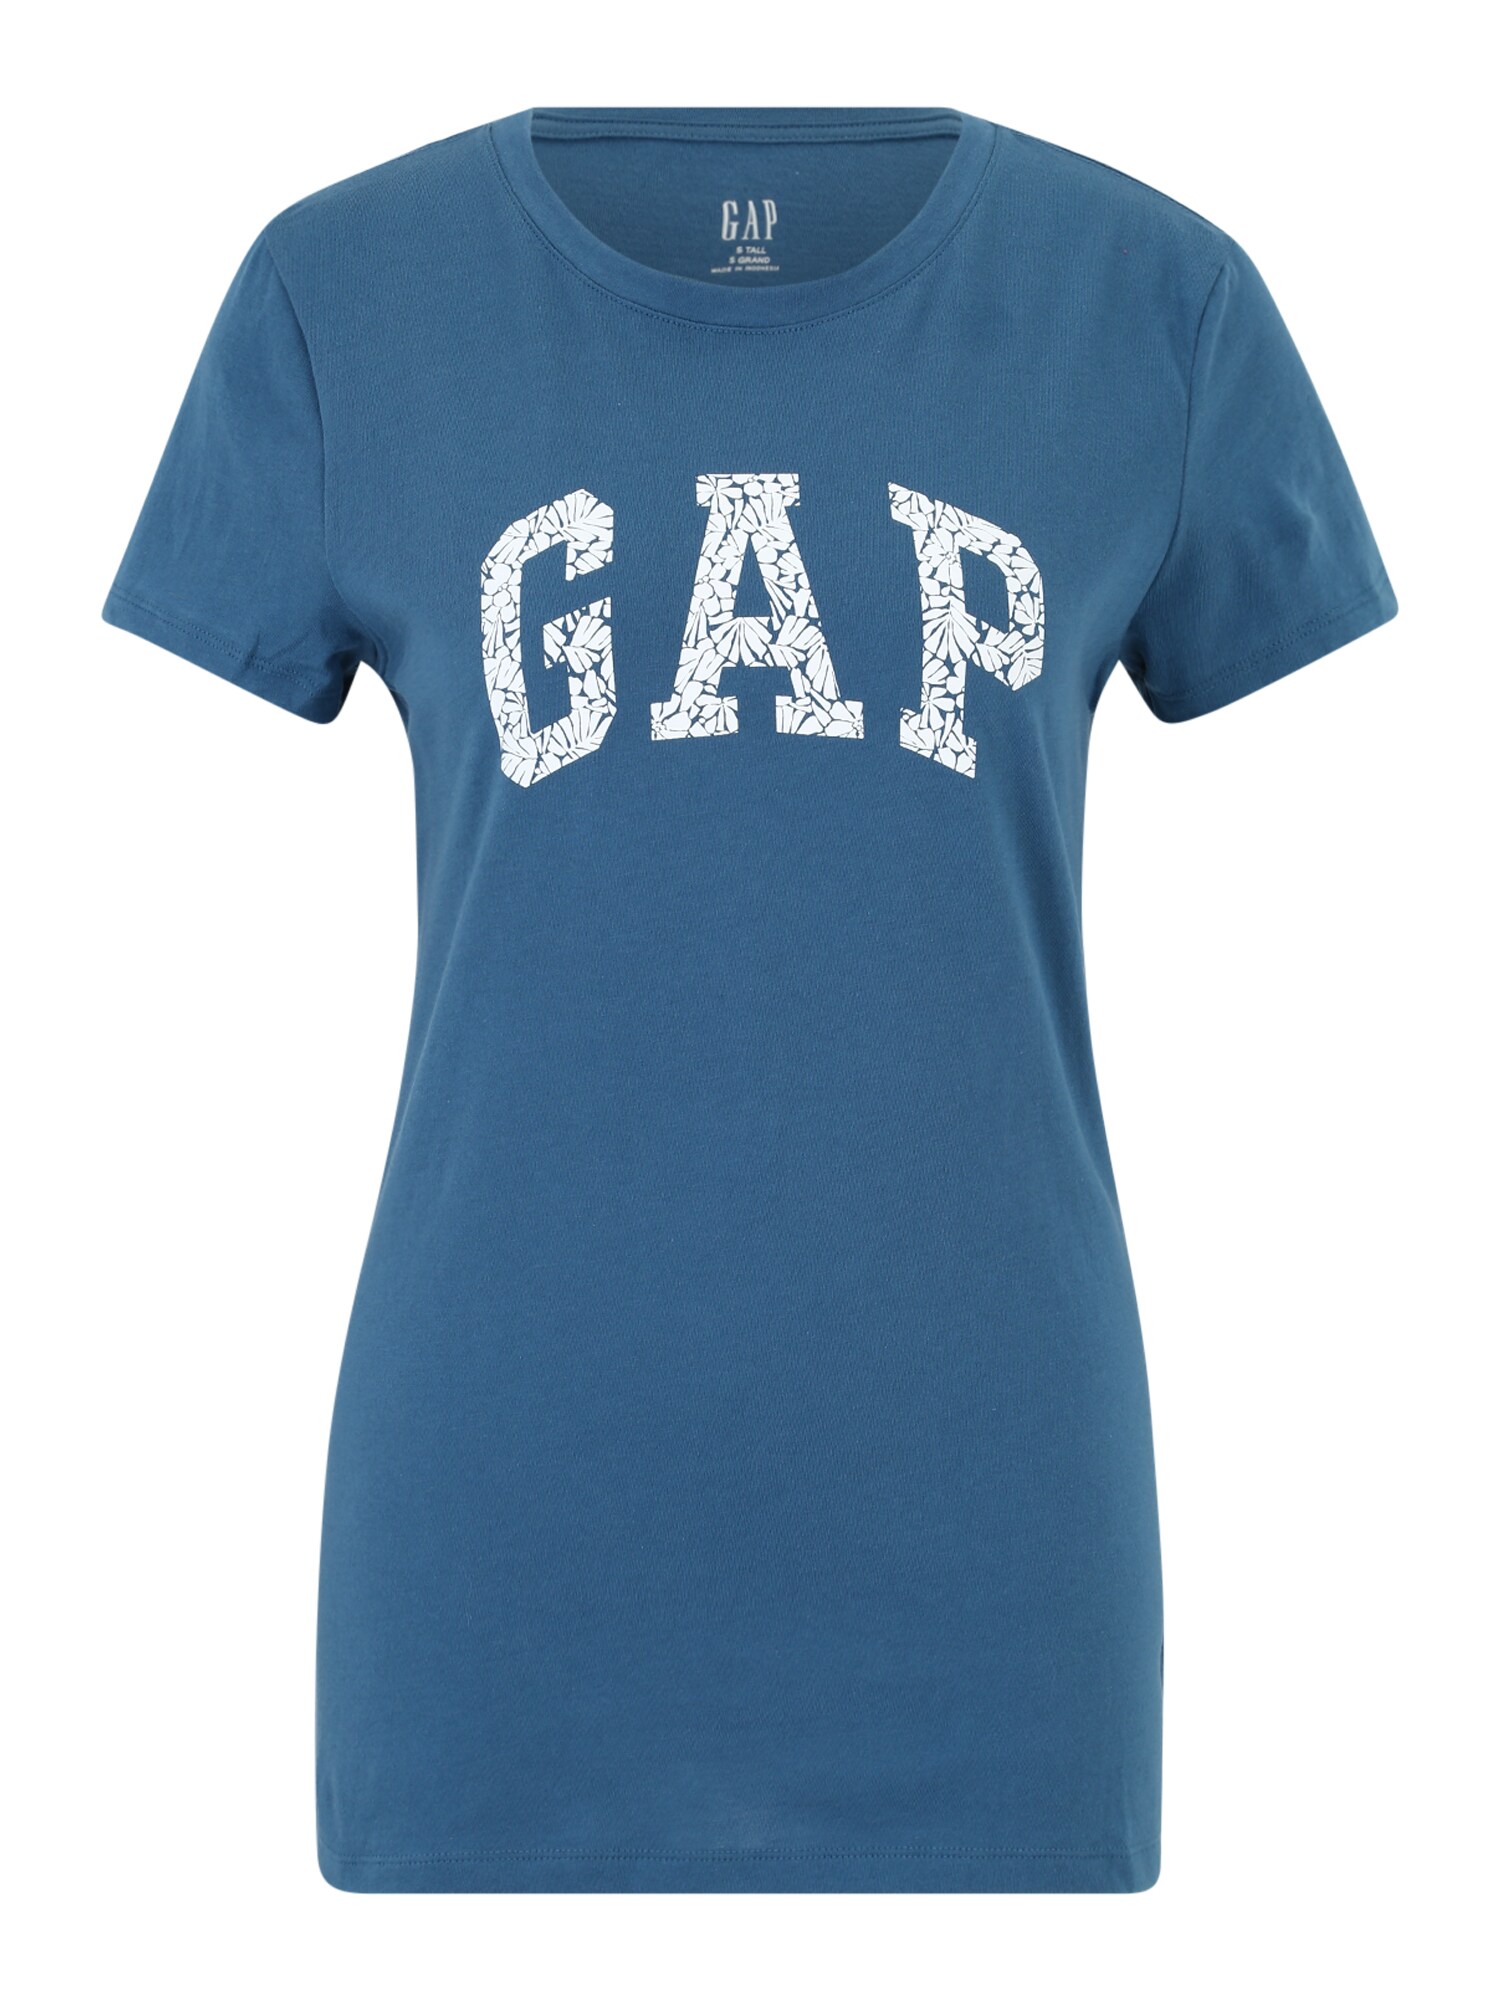 Gap Tall Marškinėliai 'NOVELTY FILL' melsvai pilka / balta